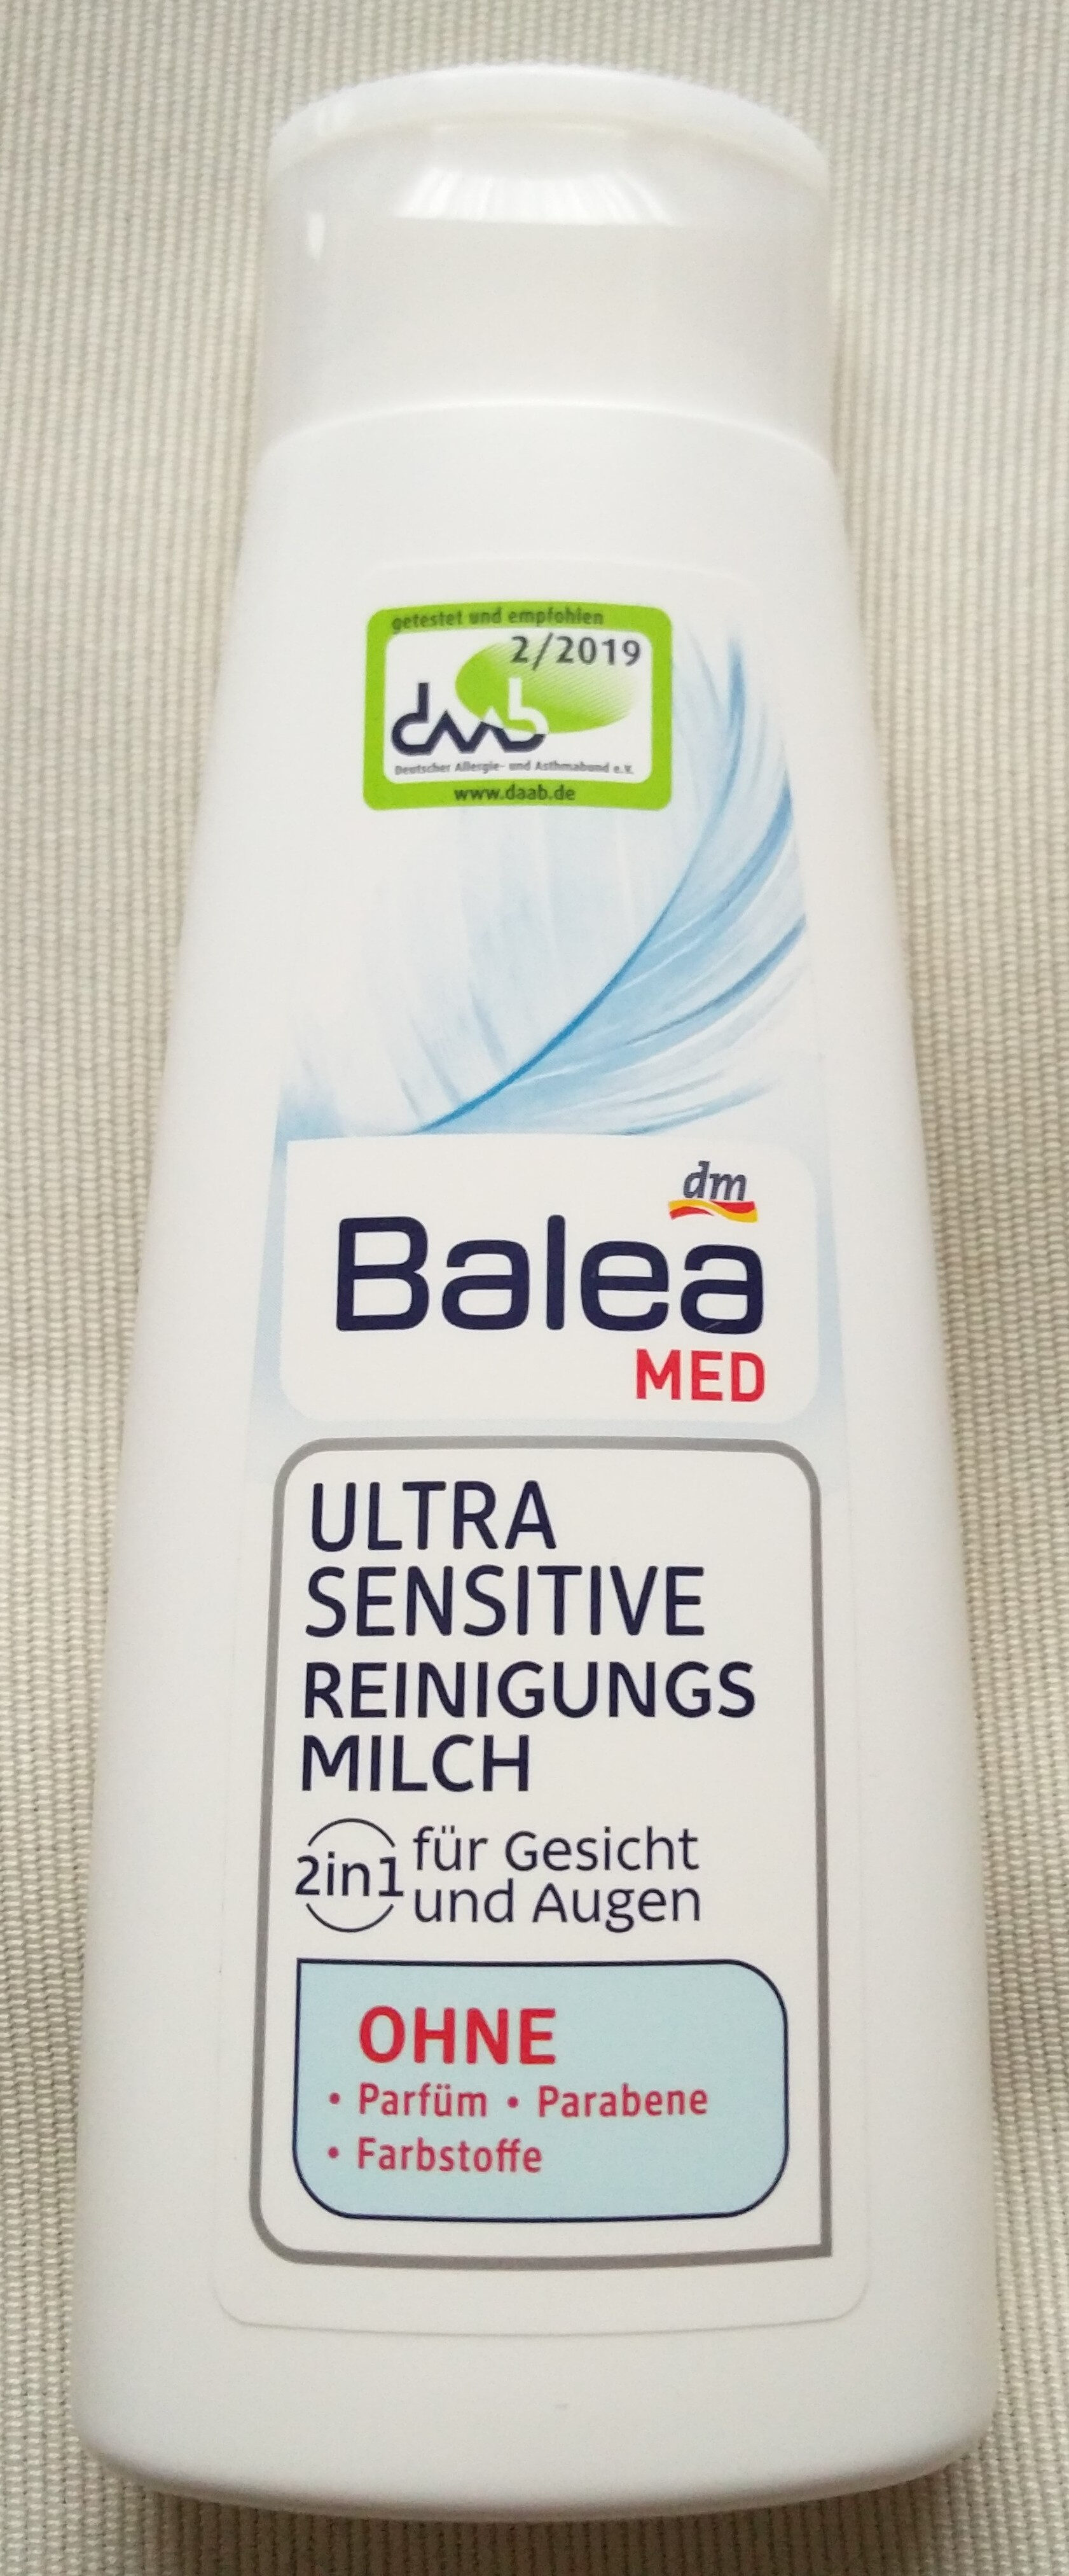 Ultra Sensitive Reinigungsmilch (2 in 1, für Gesicht und Augen) - Produkt - de